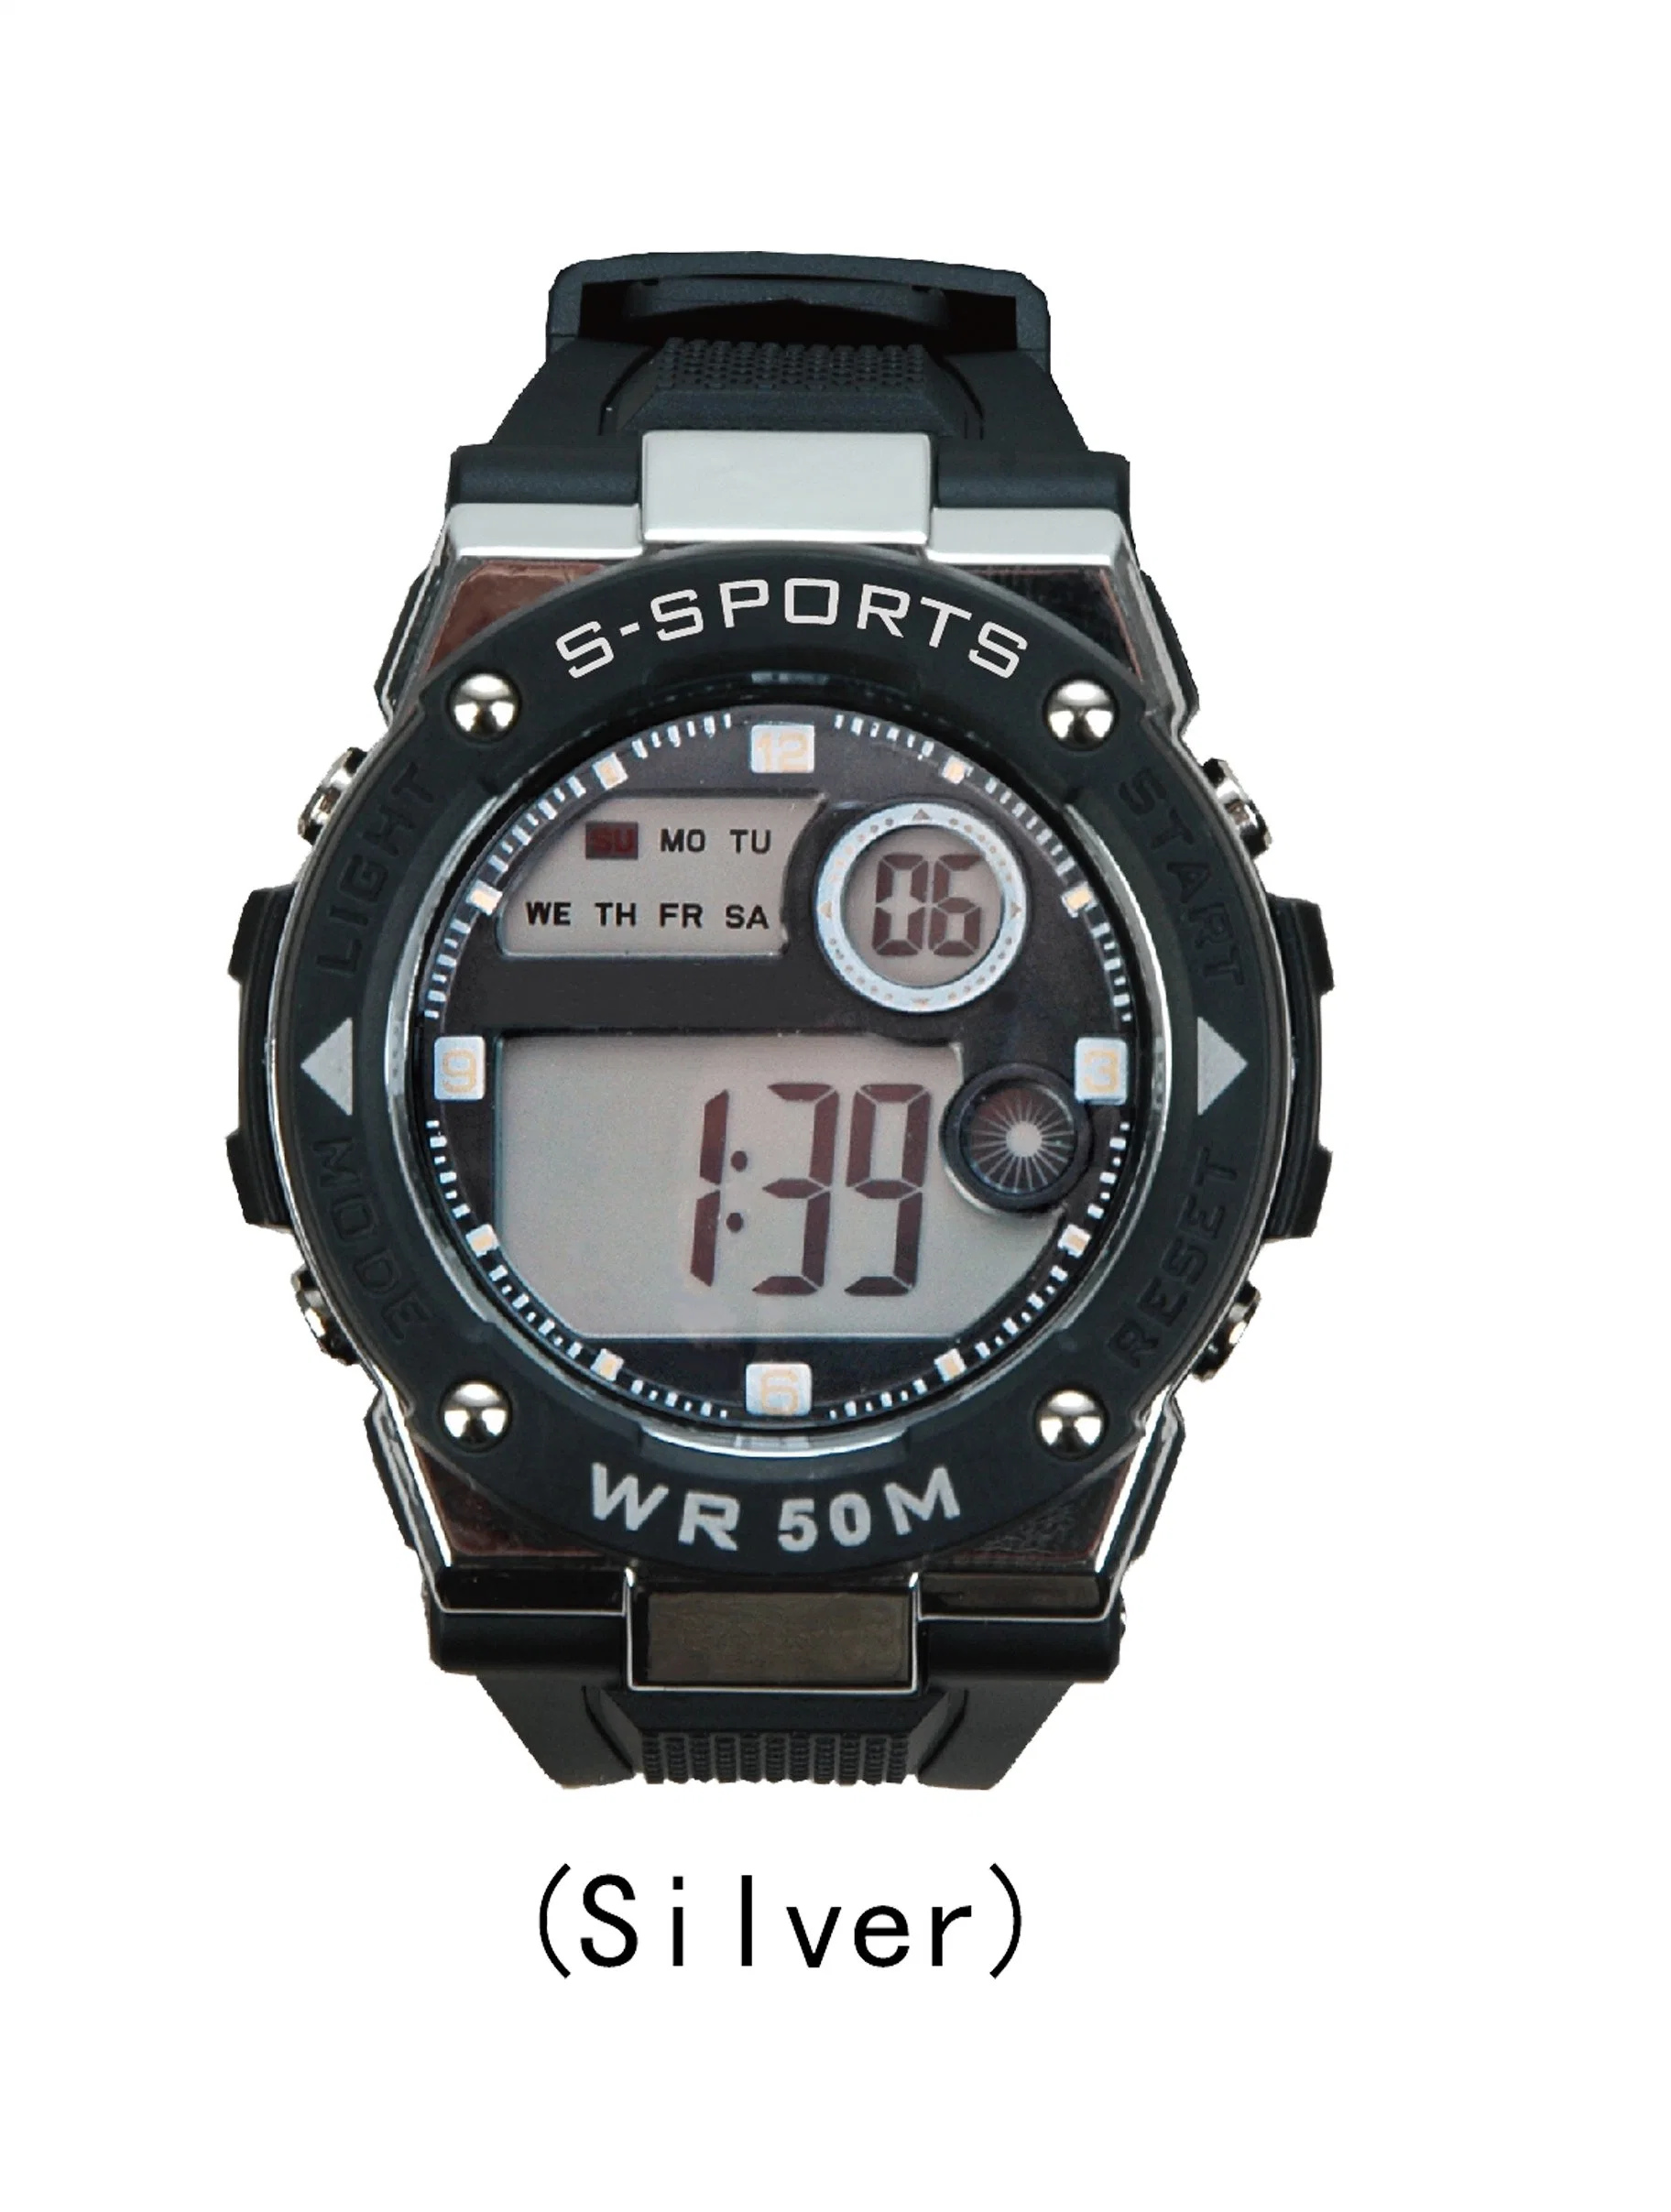 Montre électronique de sport, meilleure vente, personnalisée, étanche jusqu'à 50 mètres, montre numérique pour homme.